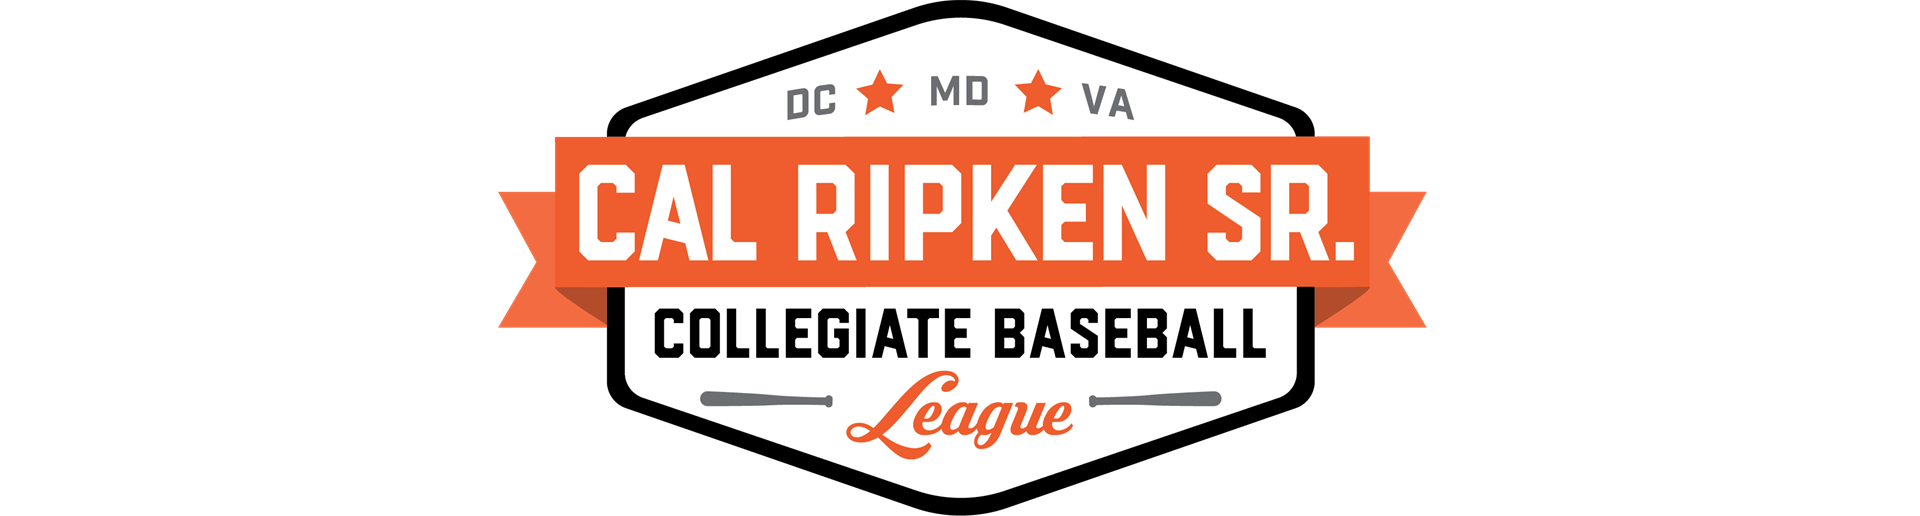 Cal Ripken Sr. Collegiate Baseball League 